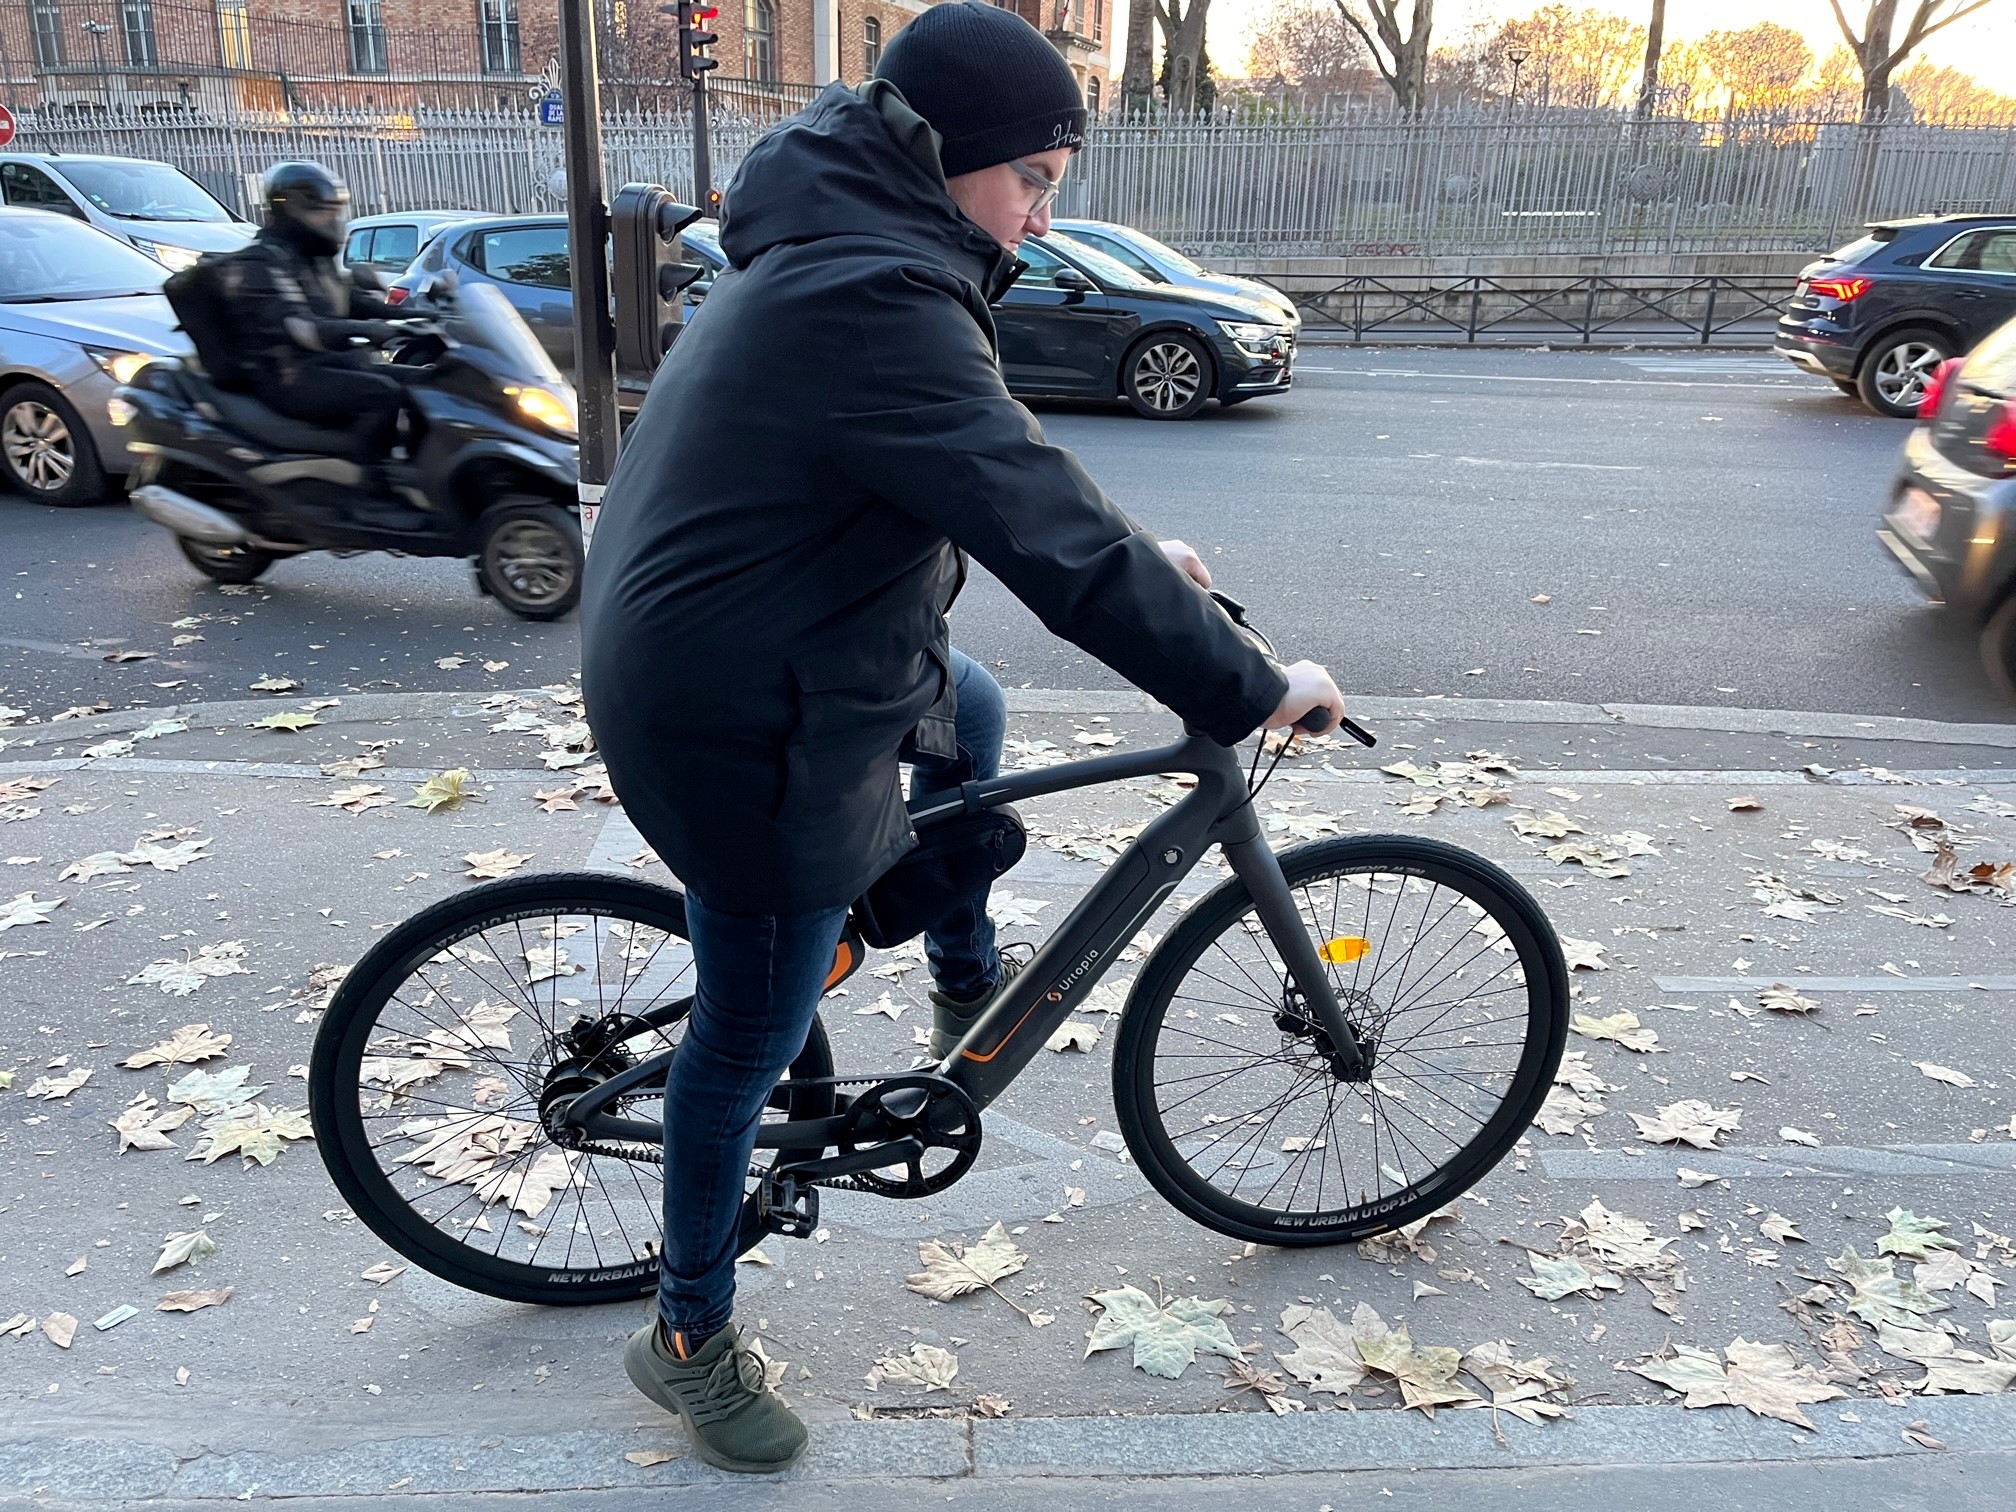 Les vélos avec assistance électrique se sont démocratisés et les derniers modèles, comme cet Urtopia, embarquent de plus en plus de technologies. LP/DLC